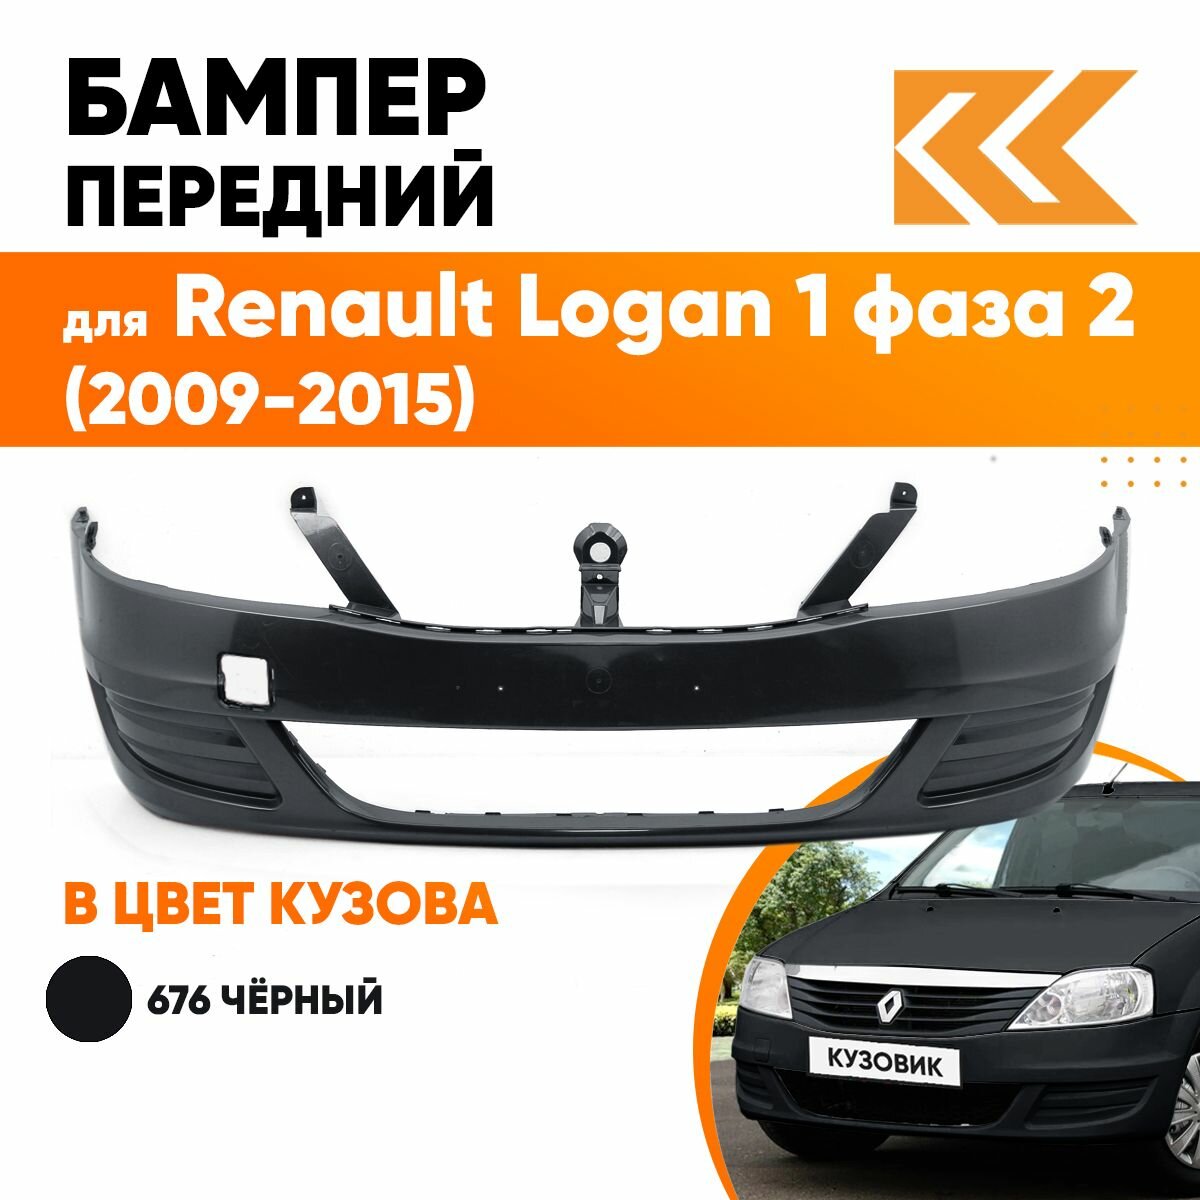 Бампер передний в цвет кузова для Рено Логан Renault Logan 1 фаза 2 (2009-2015) без отверстия под птф 676 - PEARL BLACK - Черный